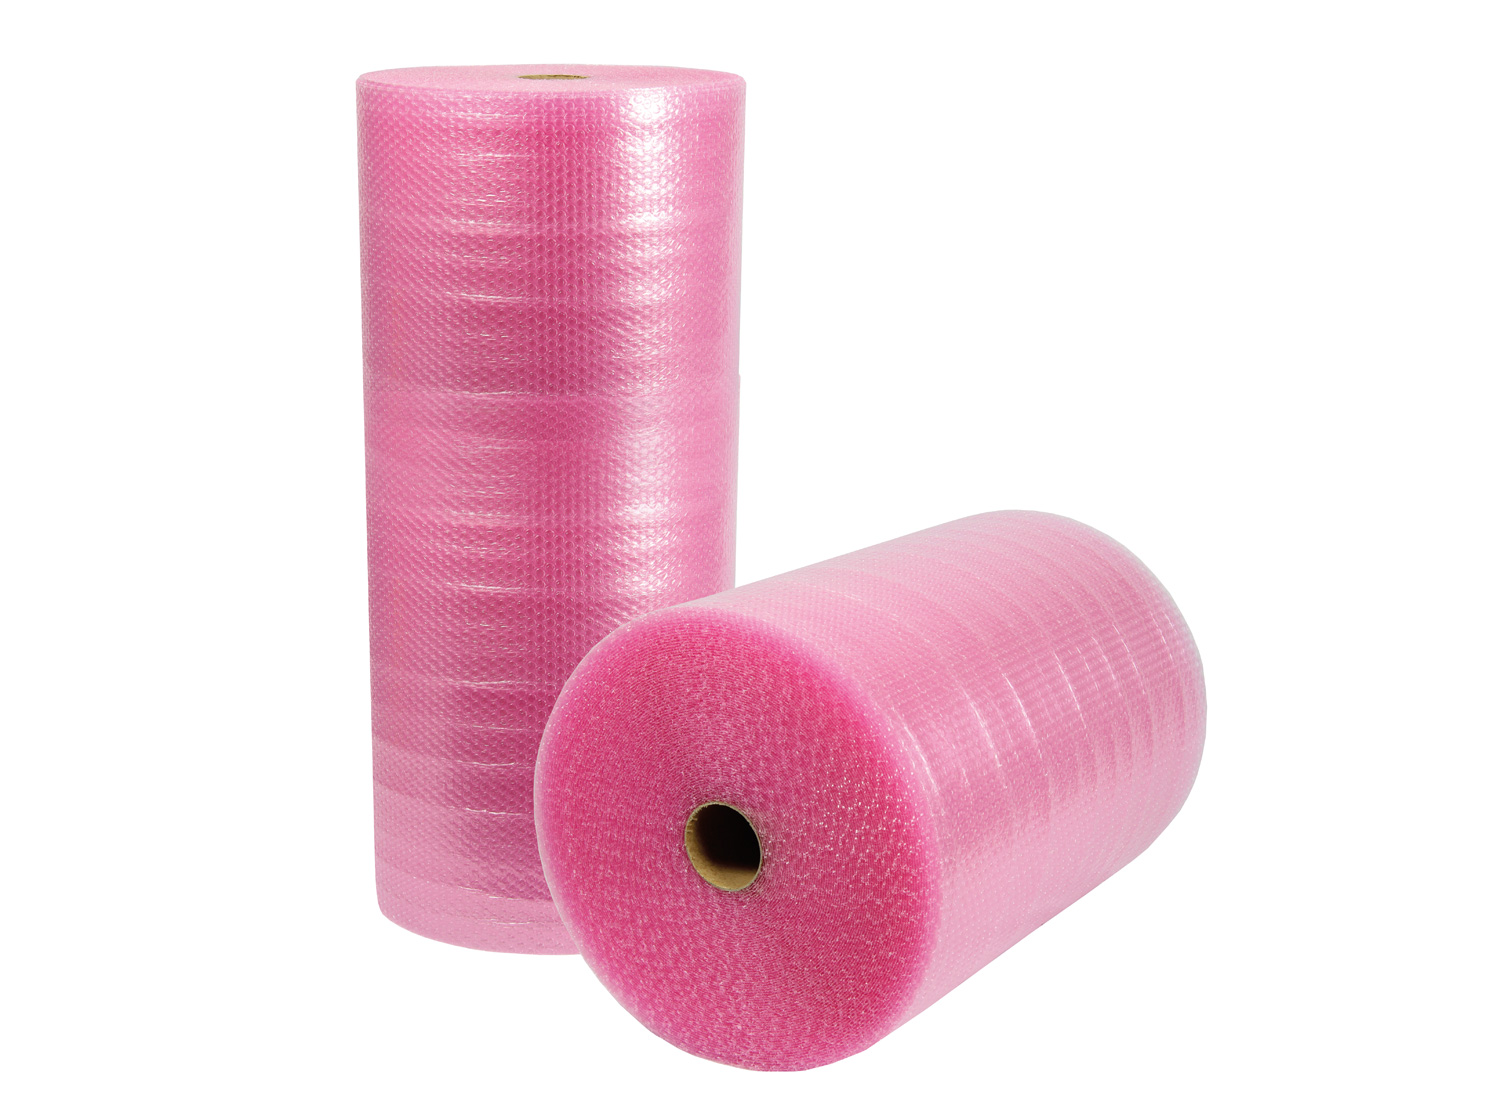 Luftpolsterfolie, 3-lagig, 600mm breitx50lfm, 100µ,, rosa, antistatisch